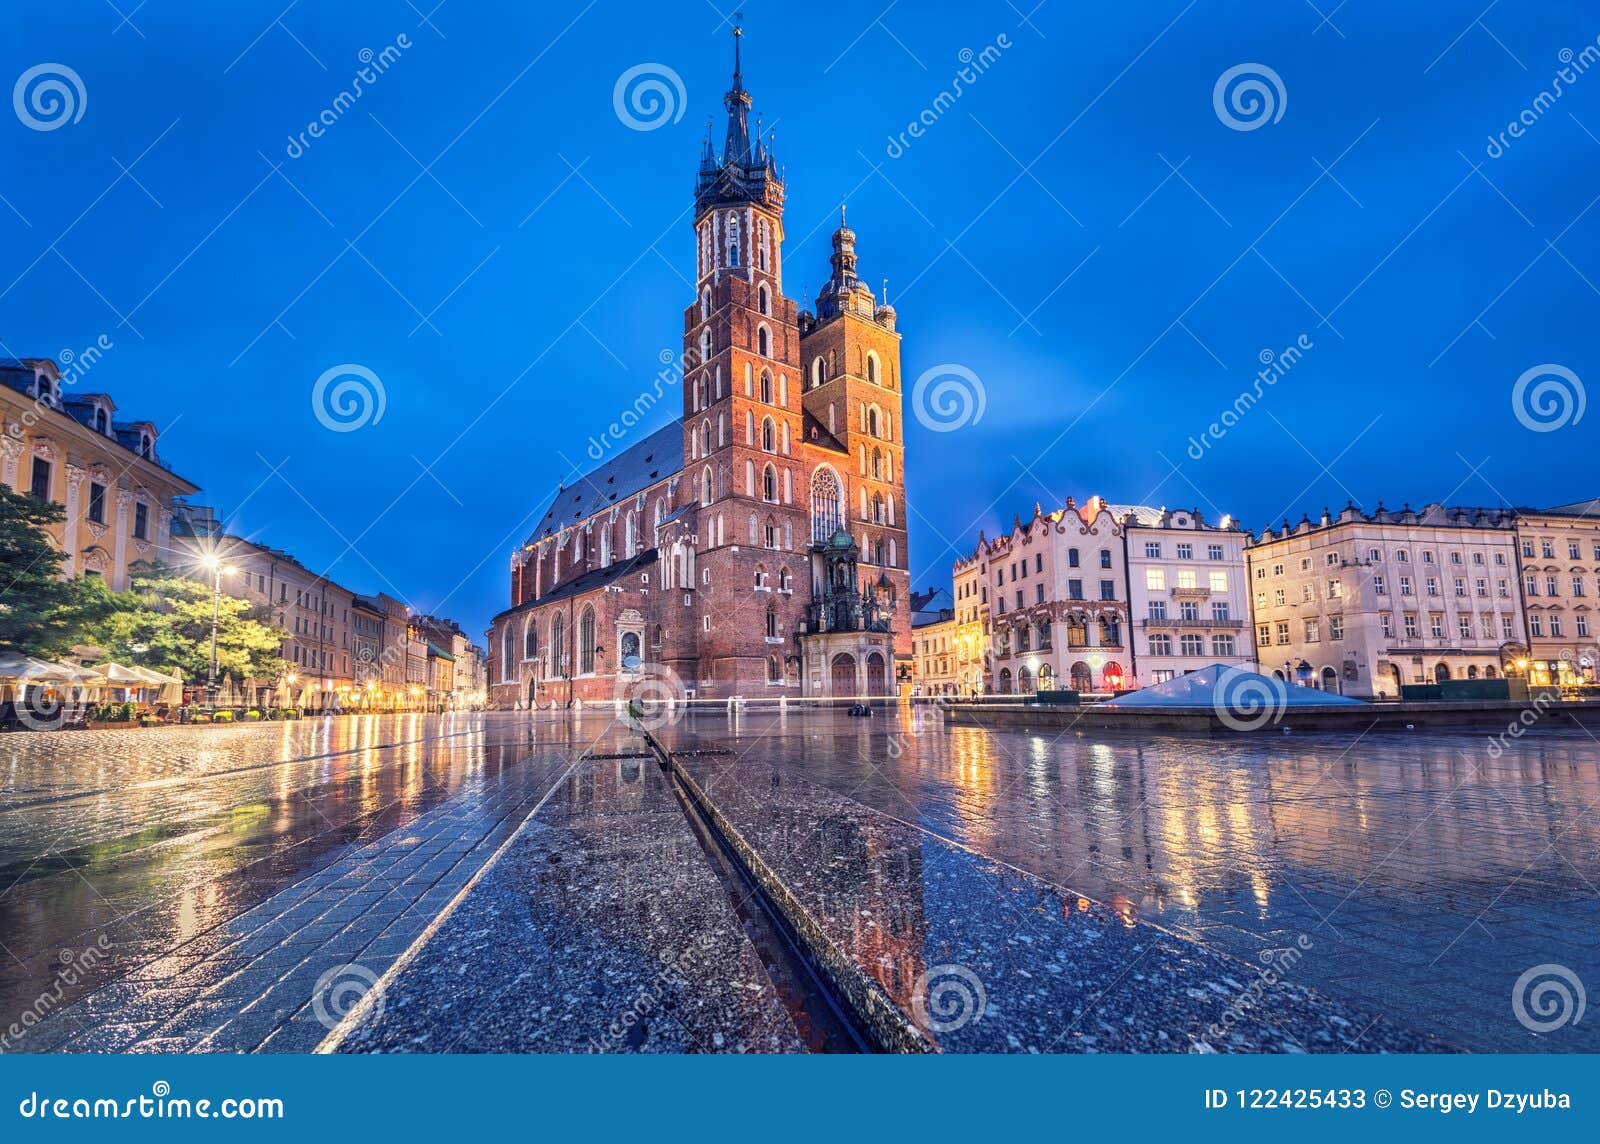 basilica of saint mary at dusk in krakow, poland